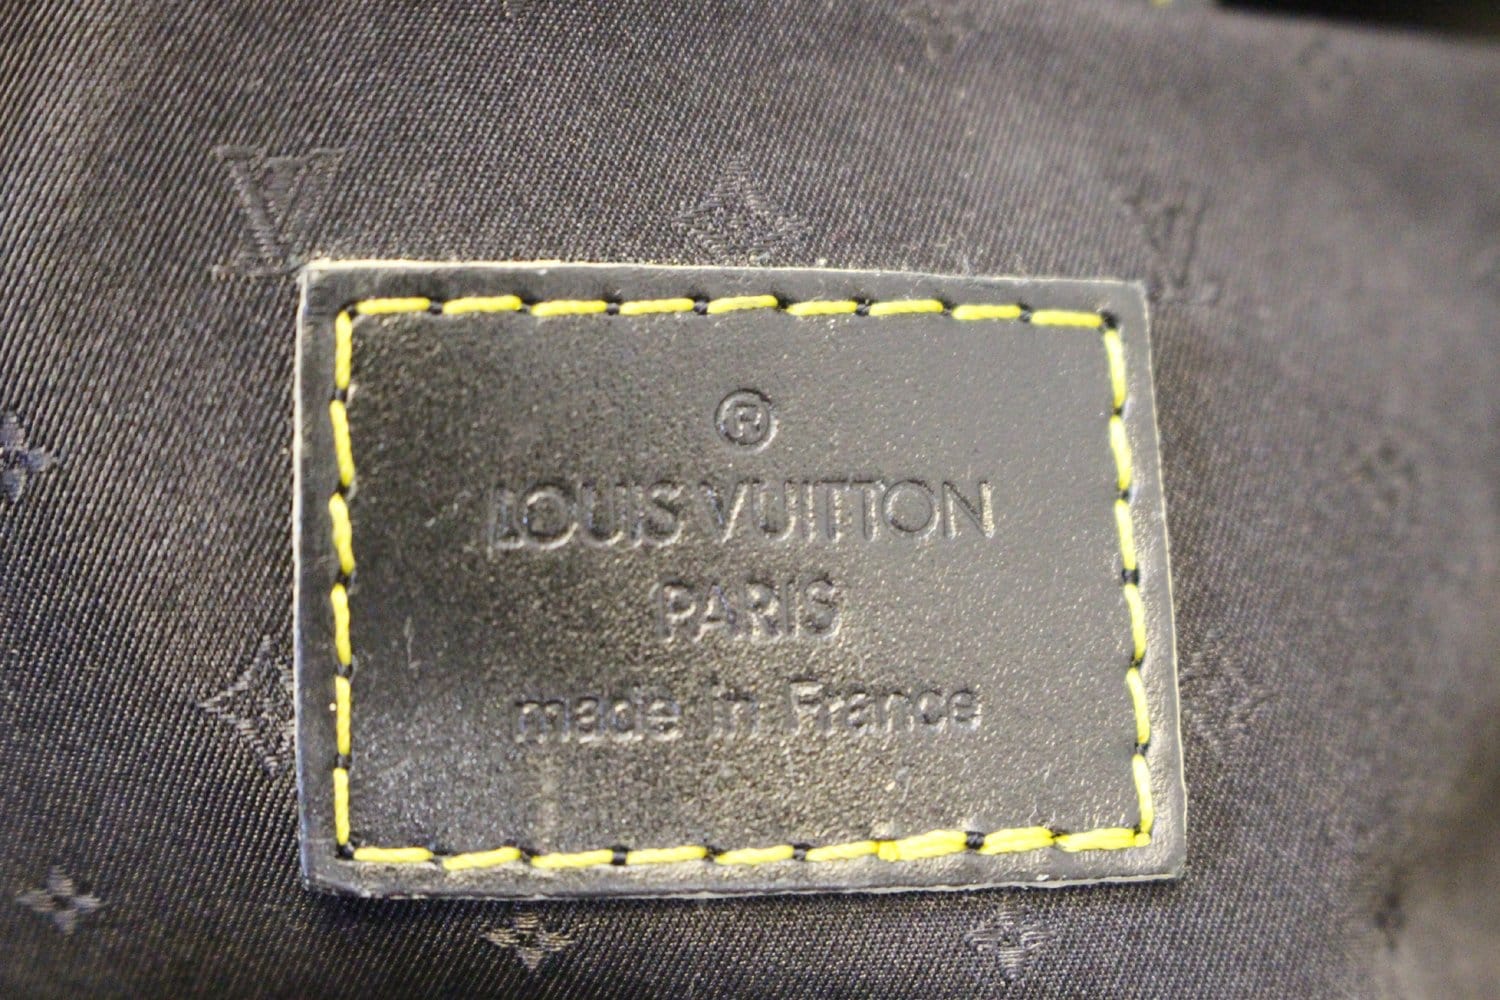 🎆 Louis Vuitton Suhali Handbag NWOT